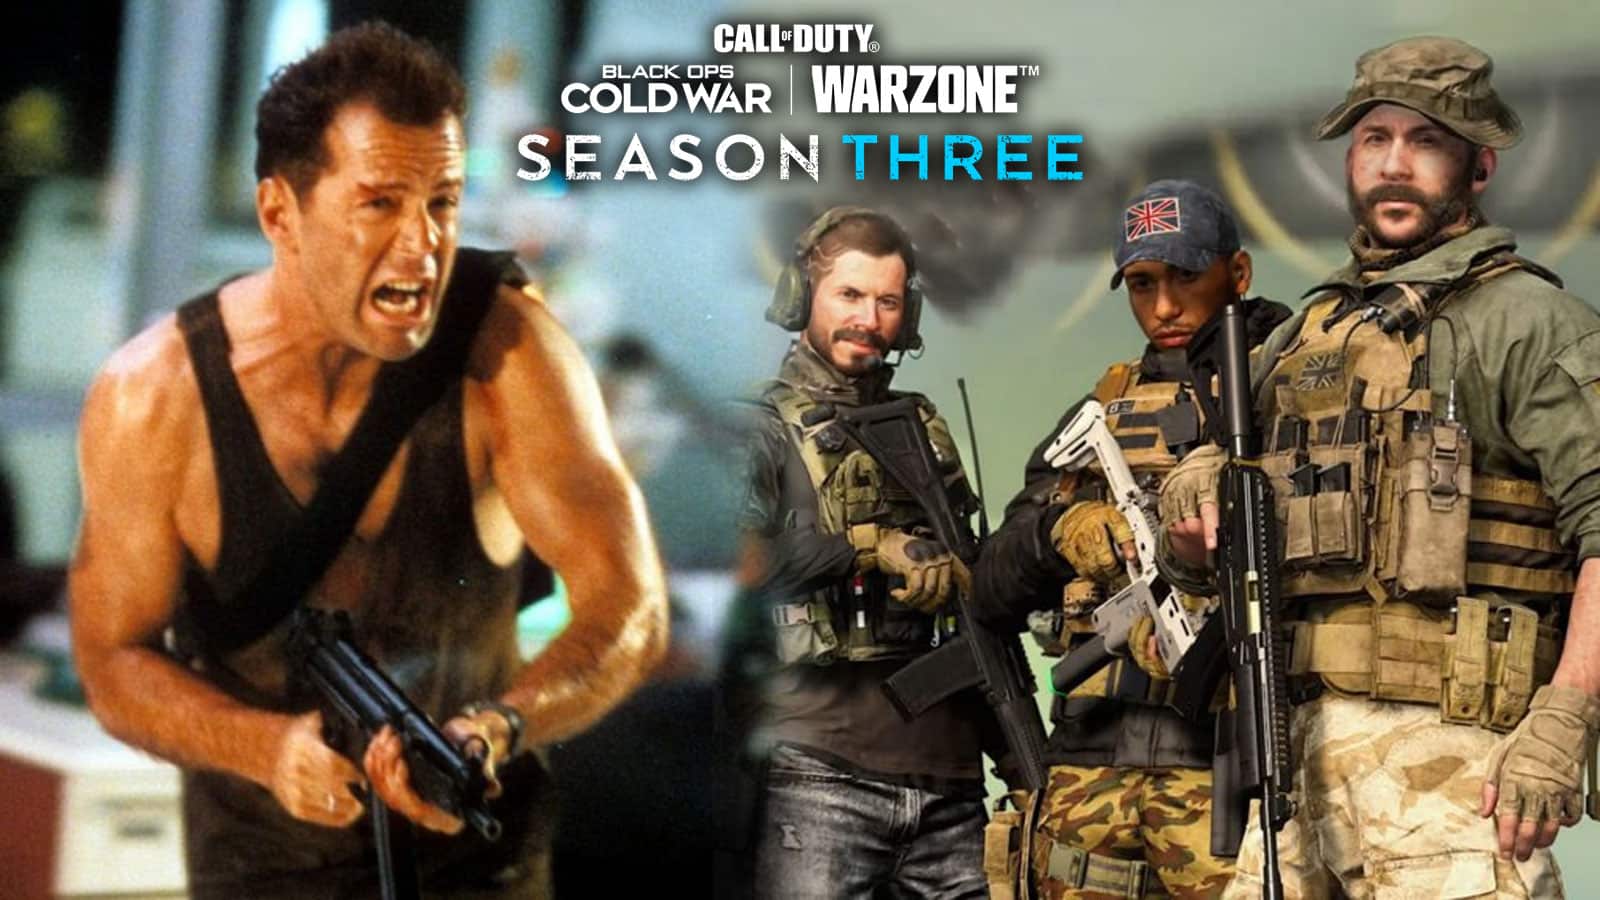 John McClane de Die Hard avec deux opérateurs Black Ops Cold War